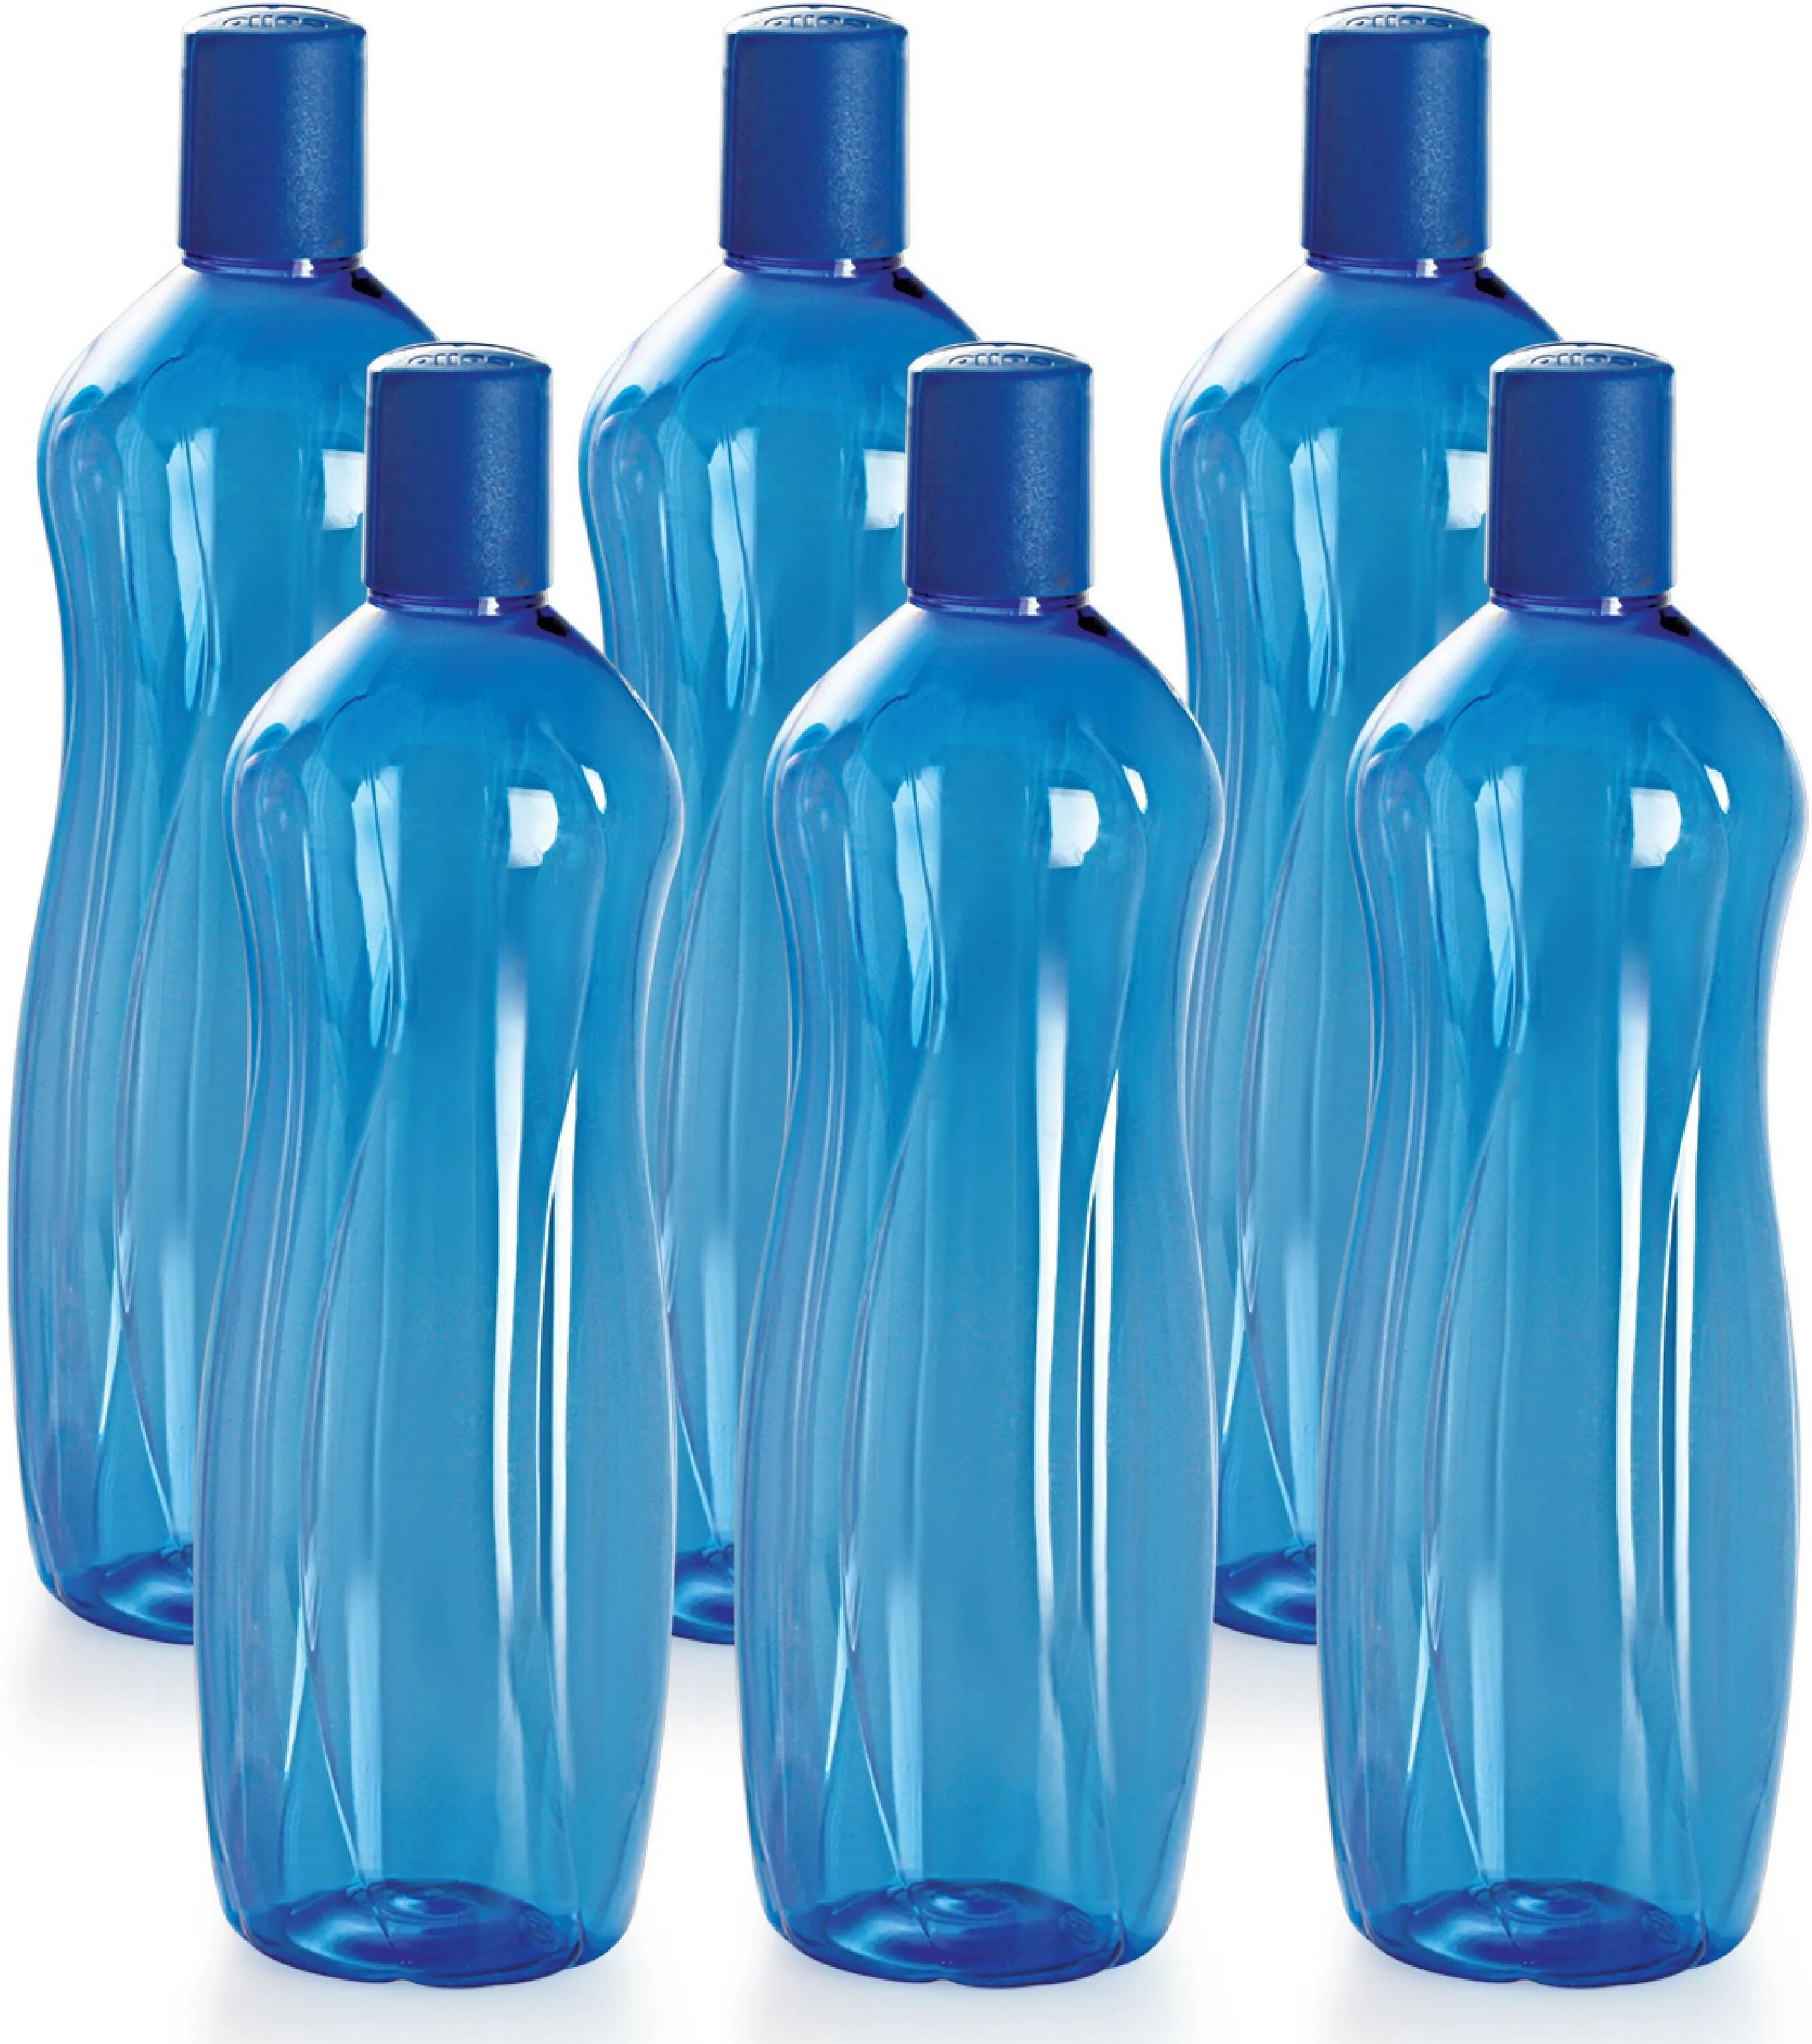 ПЭТ бутылки. Бутылка пластиковая голубая. Pet бутылки. Формы бутылок для воды. Купить пэт цена